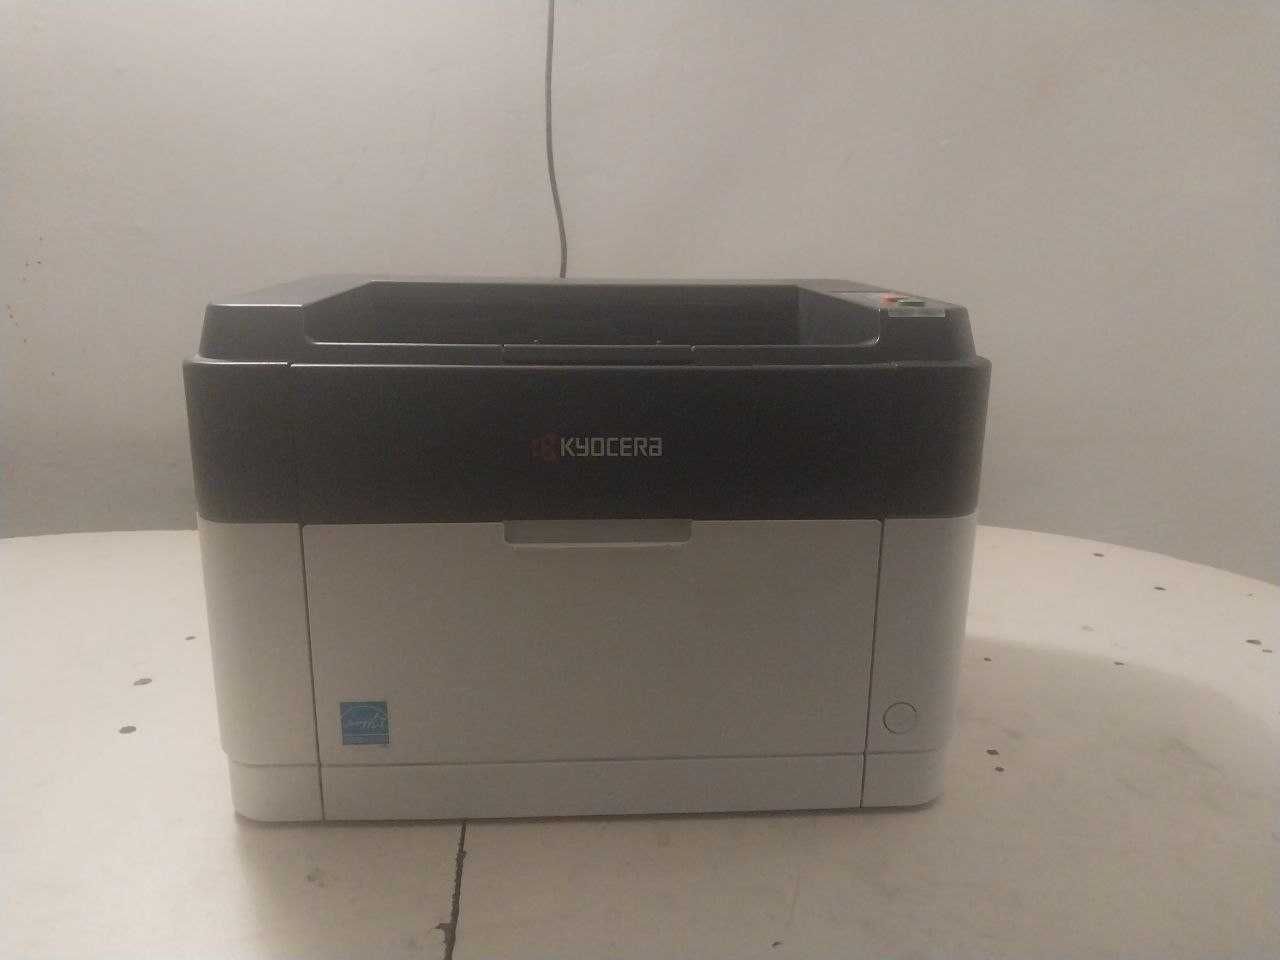 Kyocera FS-1040 printer sotiladi